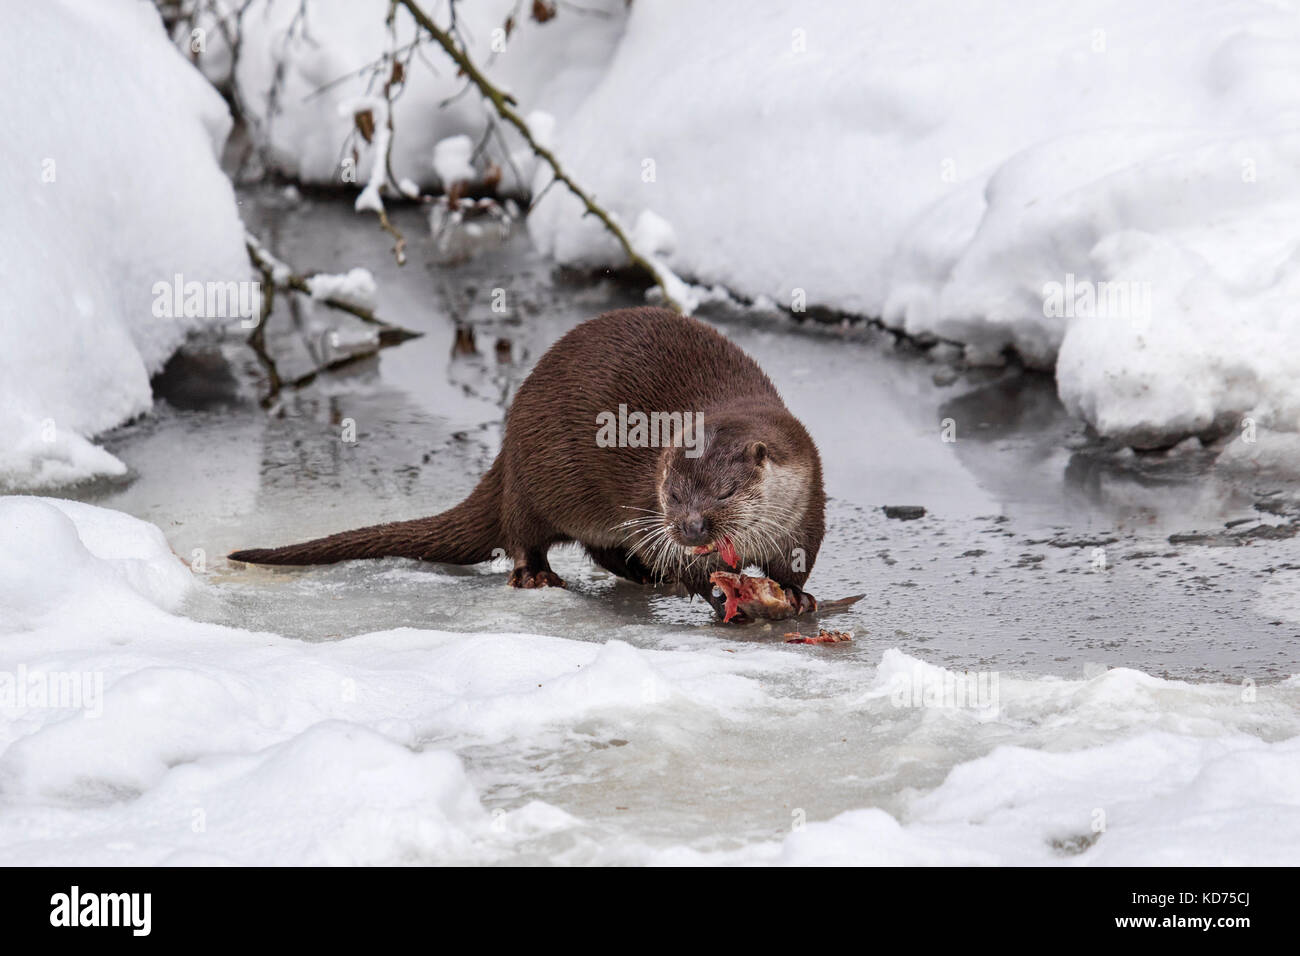 Rivière européenne loutre (Lutra lutra) manger du poisson pêché sur berge, dans la neige en hiver Banque D'Images